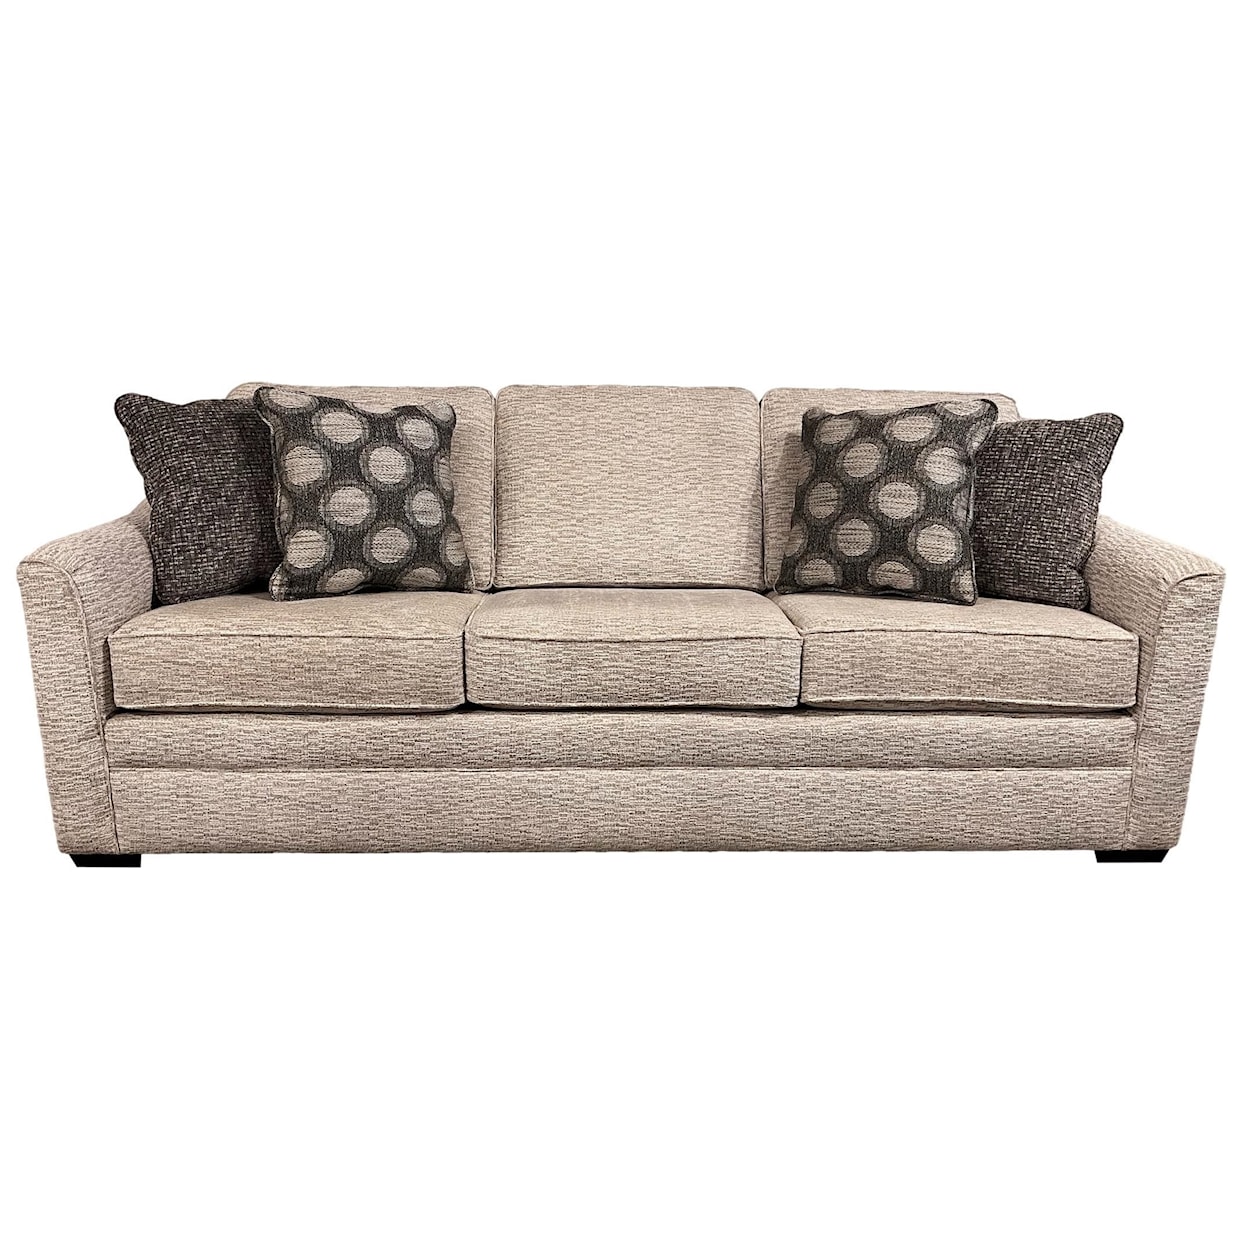 England 4T00 Series Contemporary Casual Sofa